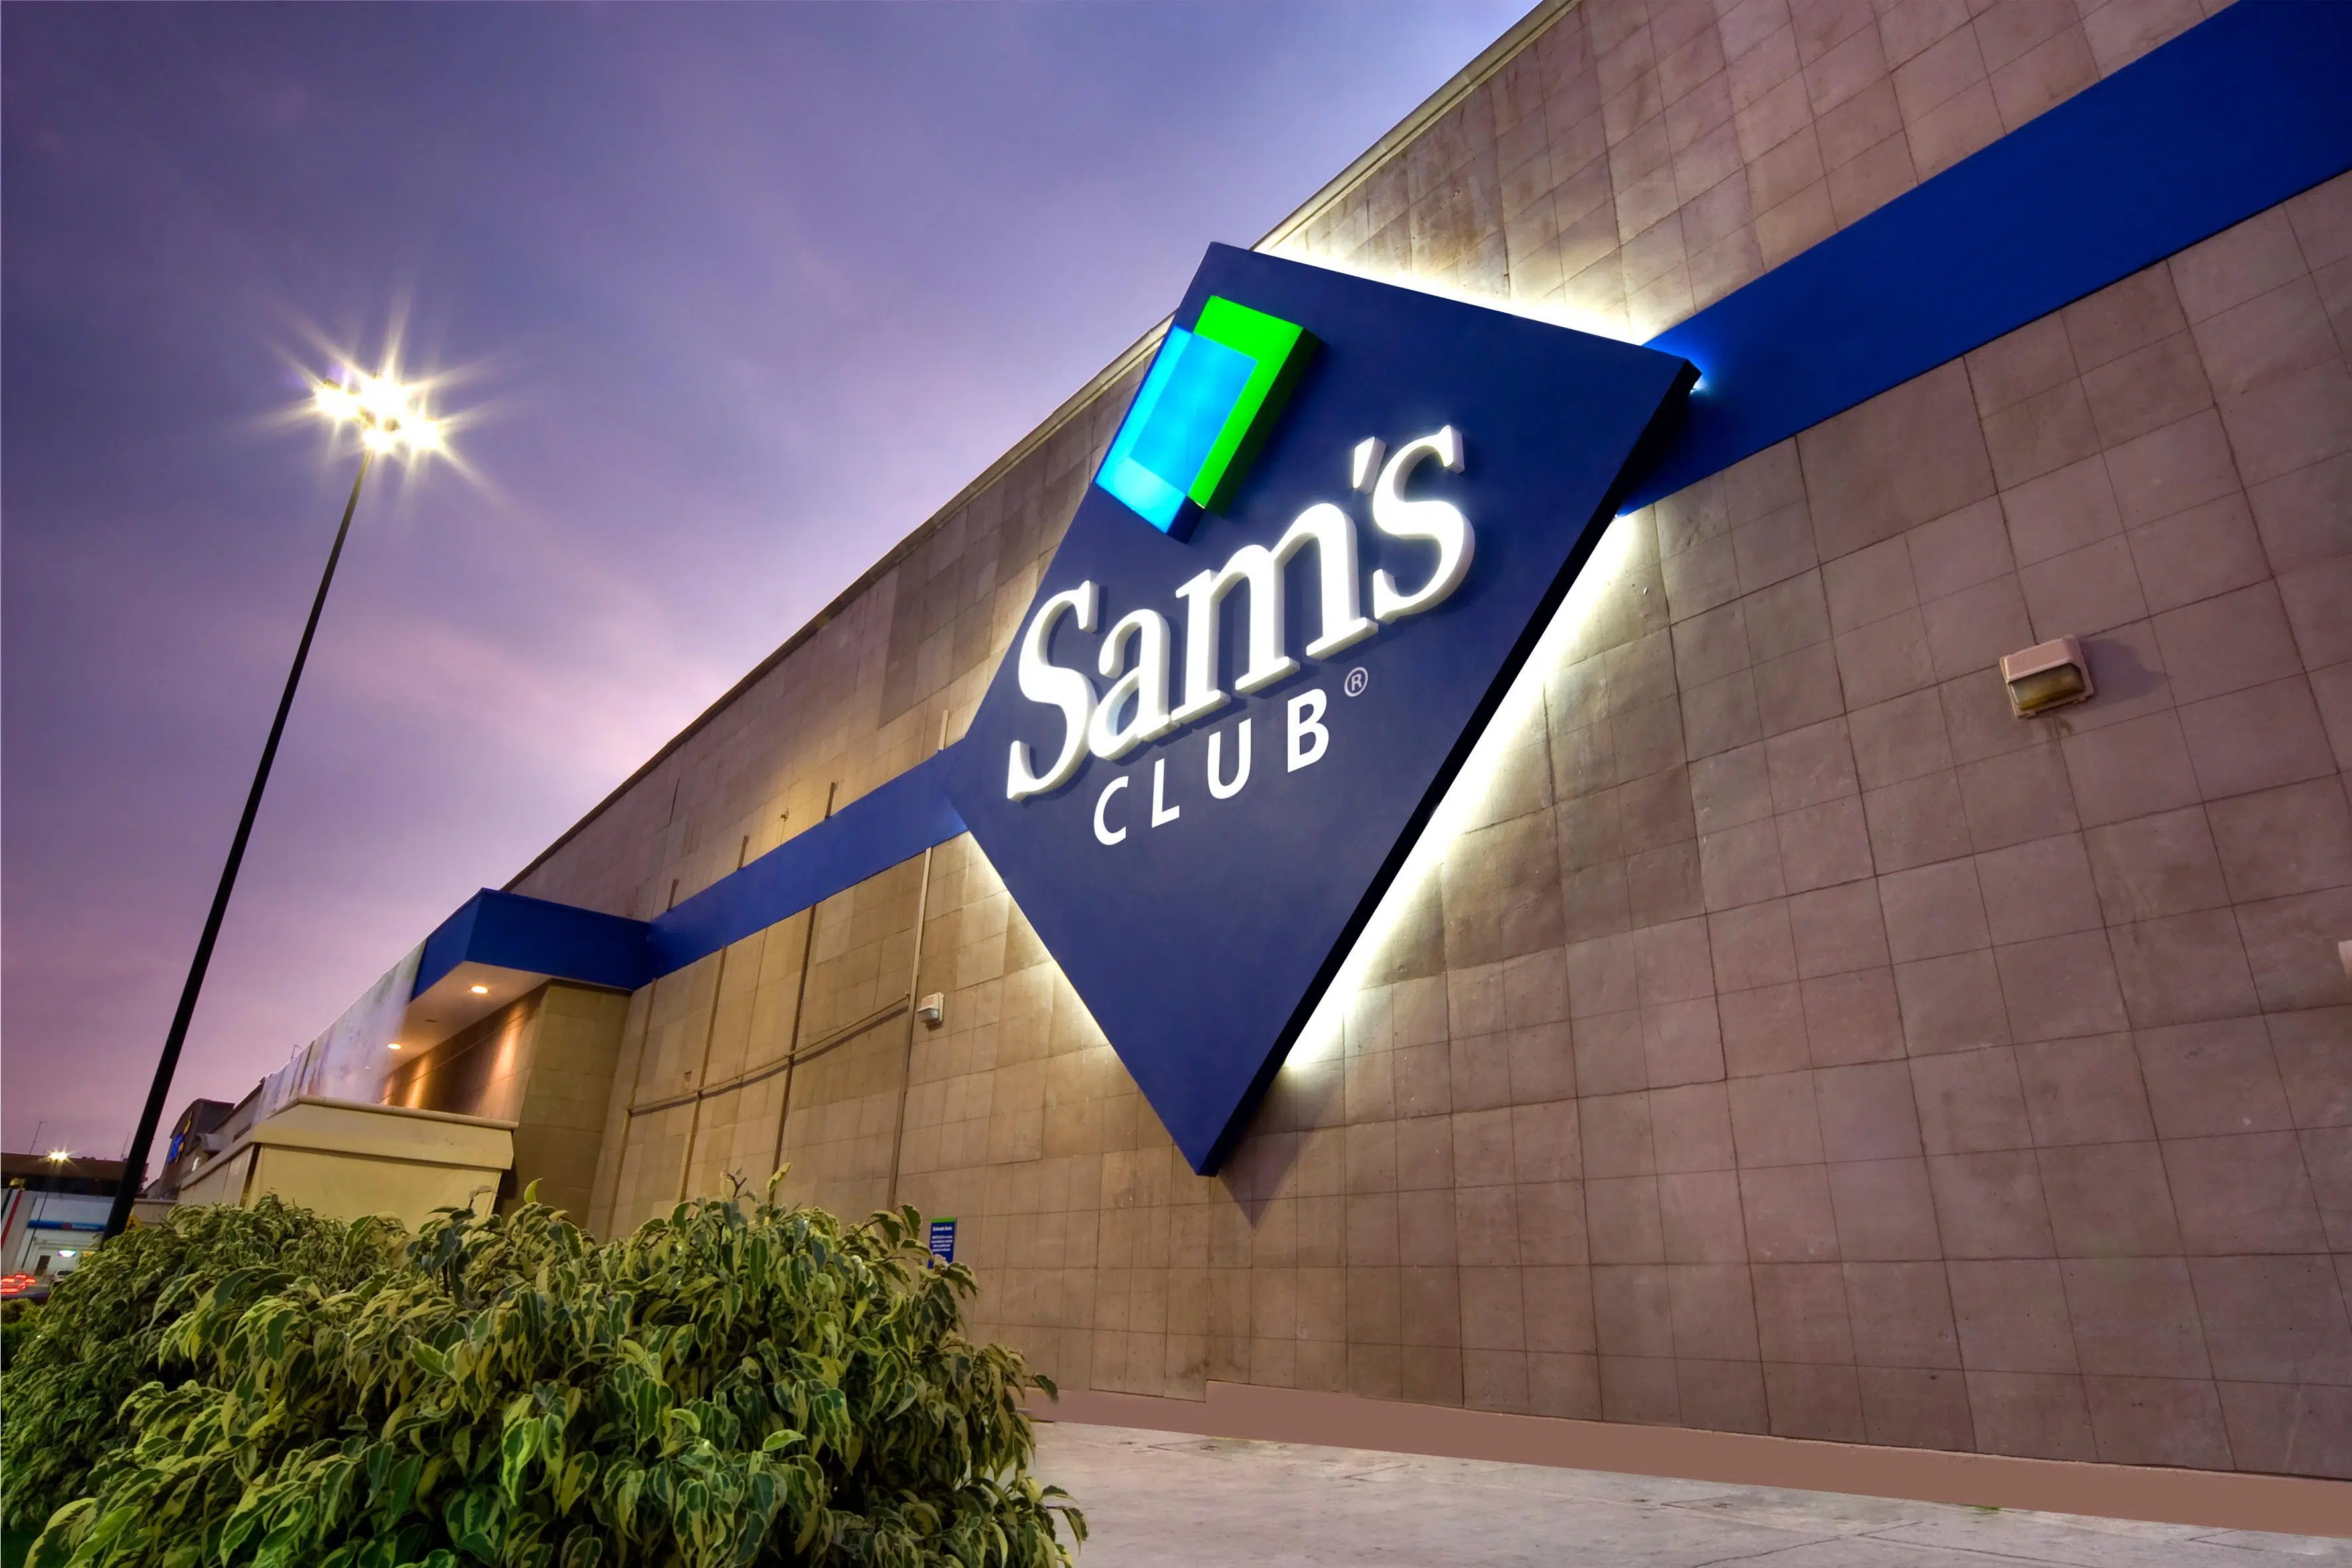 ¿Ya te enteraste? Sam’s Club estará con ofertas esta temporada de “Open House”. Conoce todos los detalles aquí